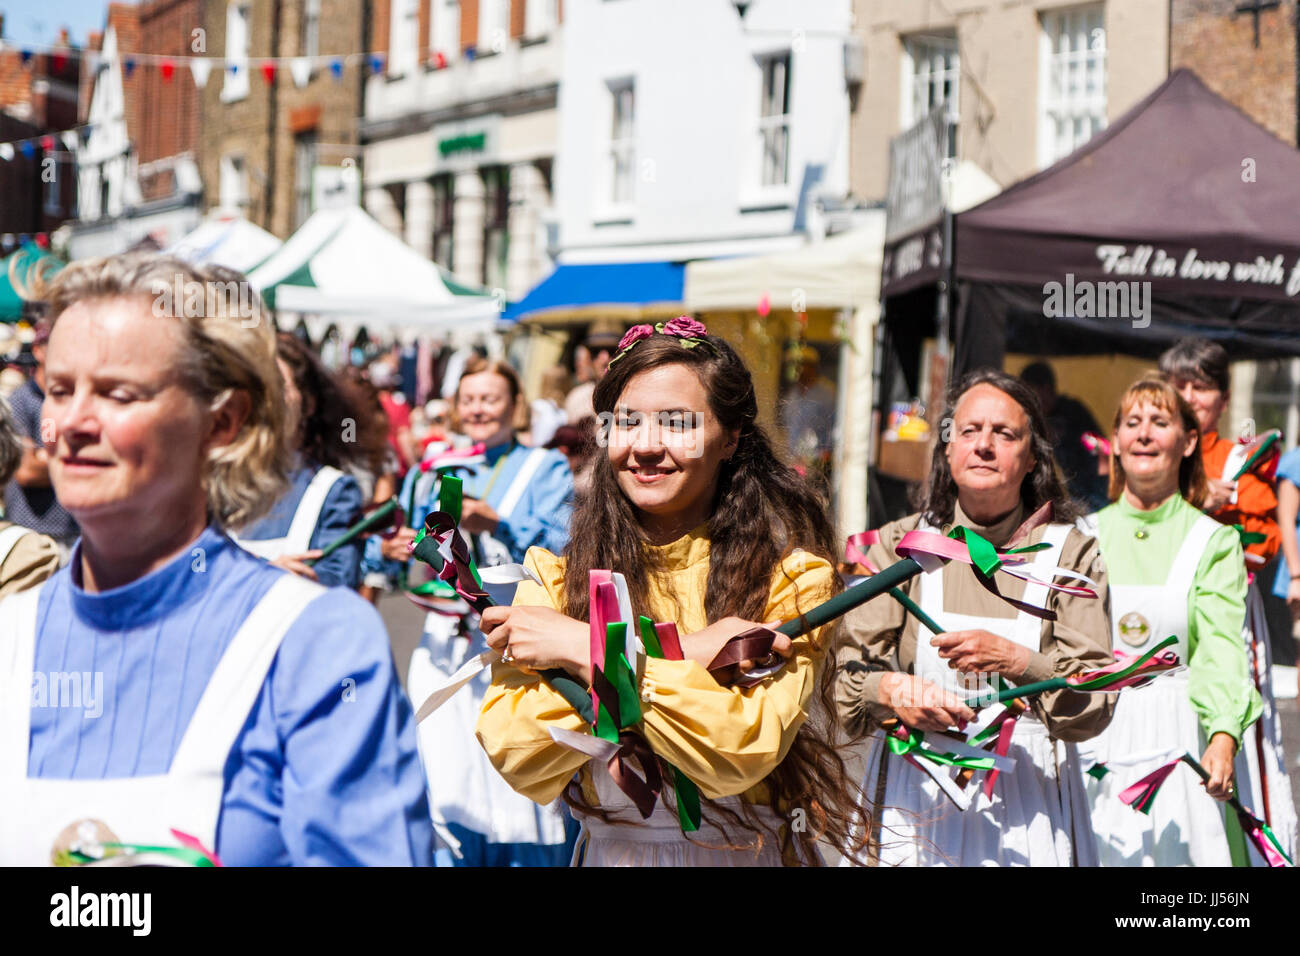 La danse folklorique traditionnel anglais, les femmes d'un côté May Morris danses dans la rue de ville médiévale de Sandwich. Petits Bâtons avec des rubans. Banque D'Images